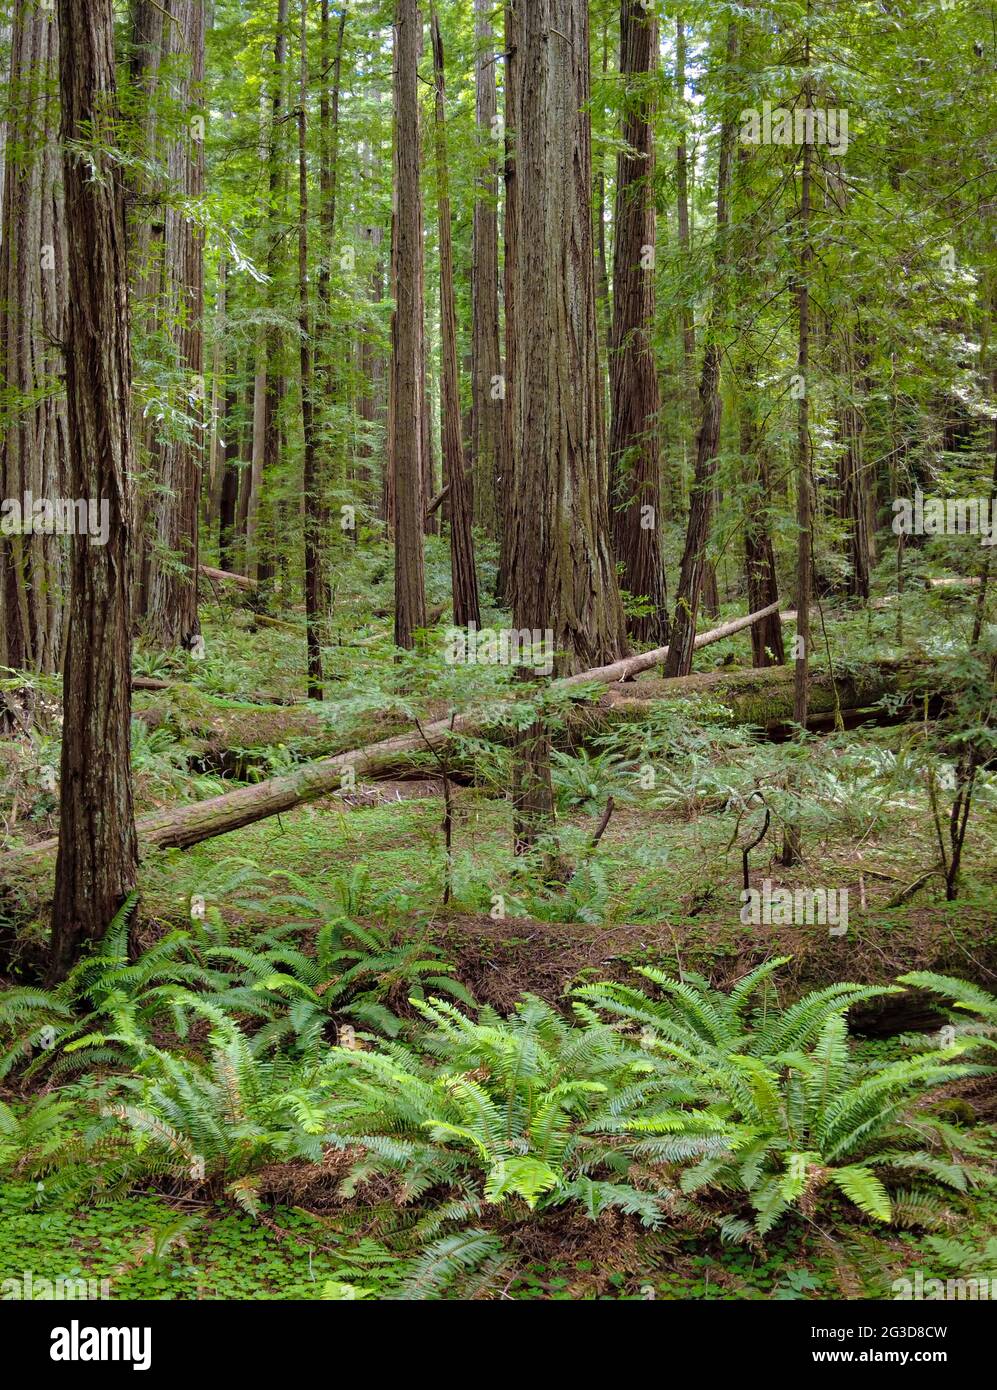 Enormi sequoie costiere, sempervirens Sequoia, prosperano nel clima umido di Humboldt Redwoods state Park, California settentrionale. Foto Stock